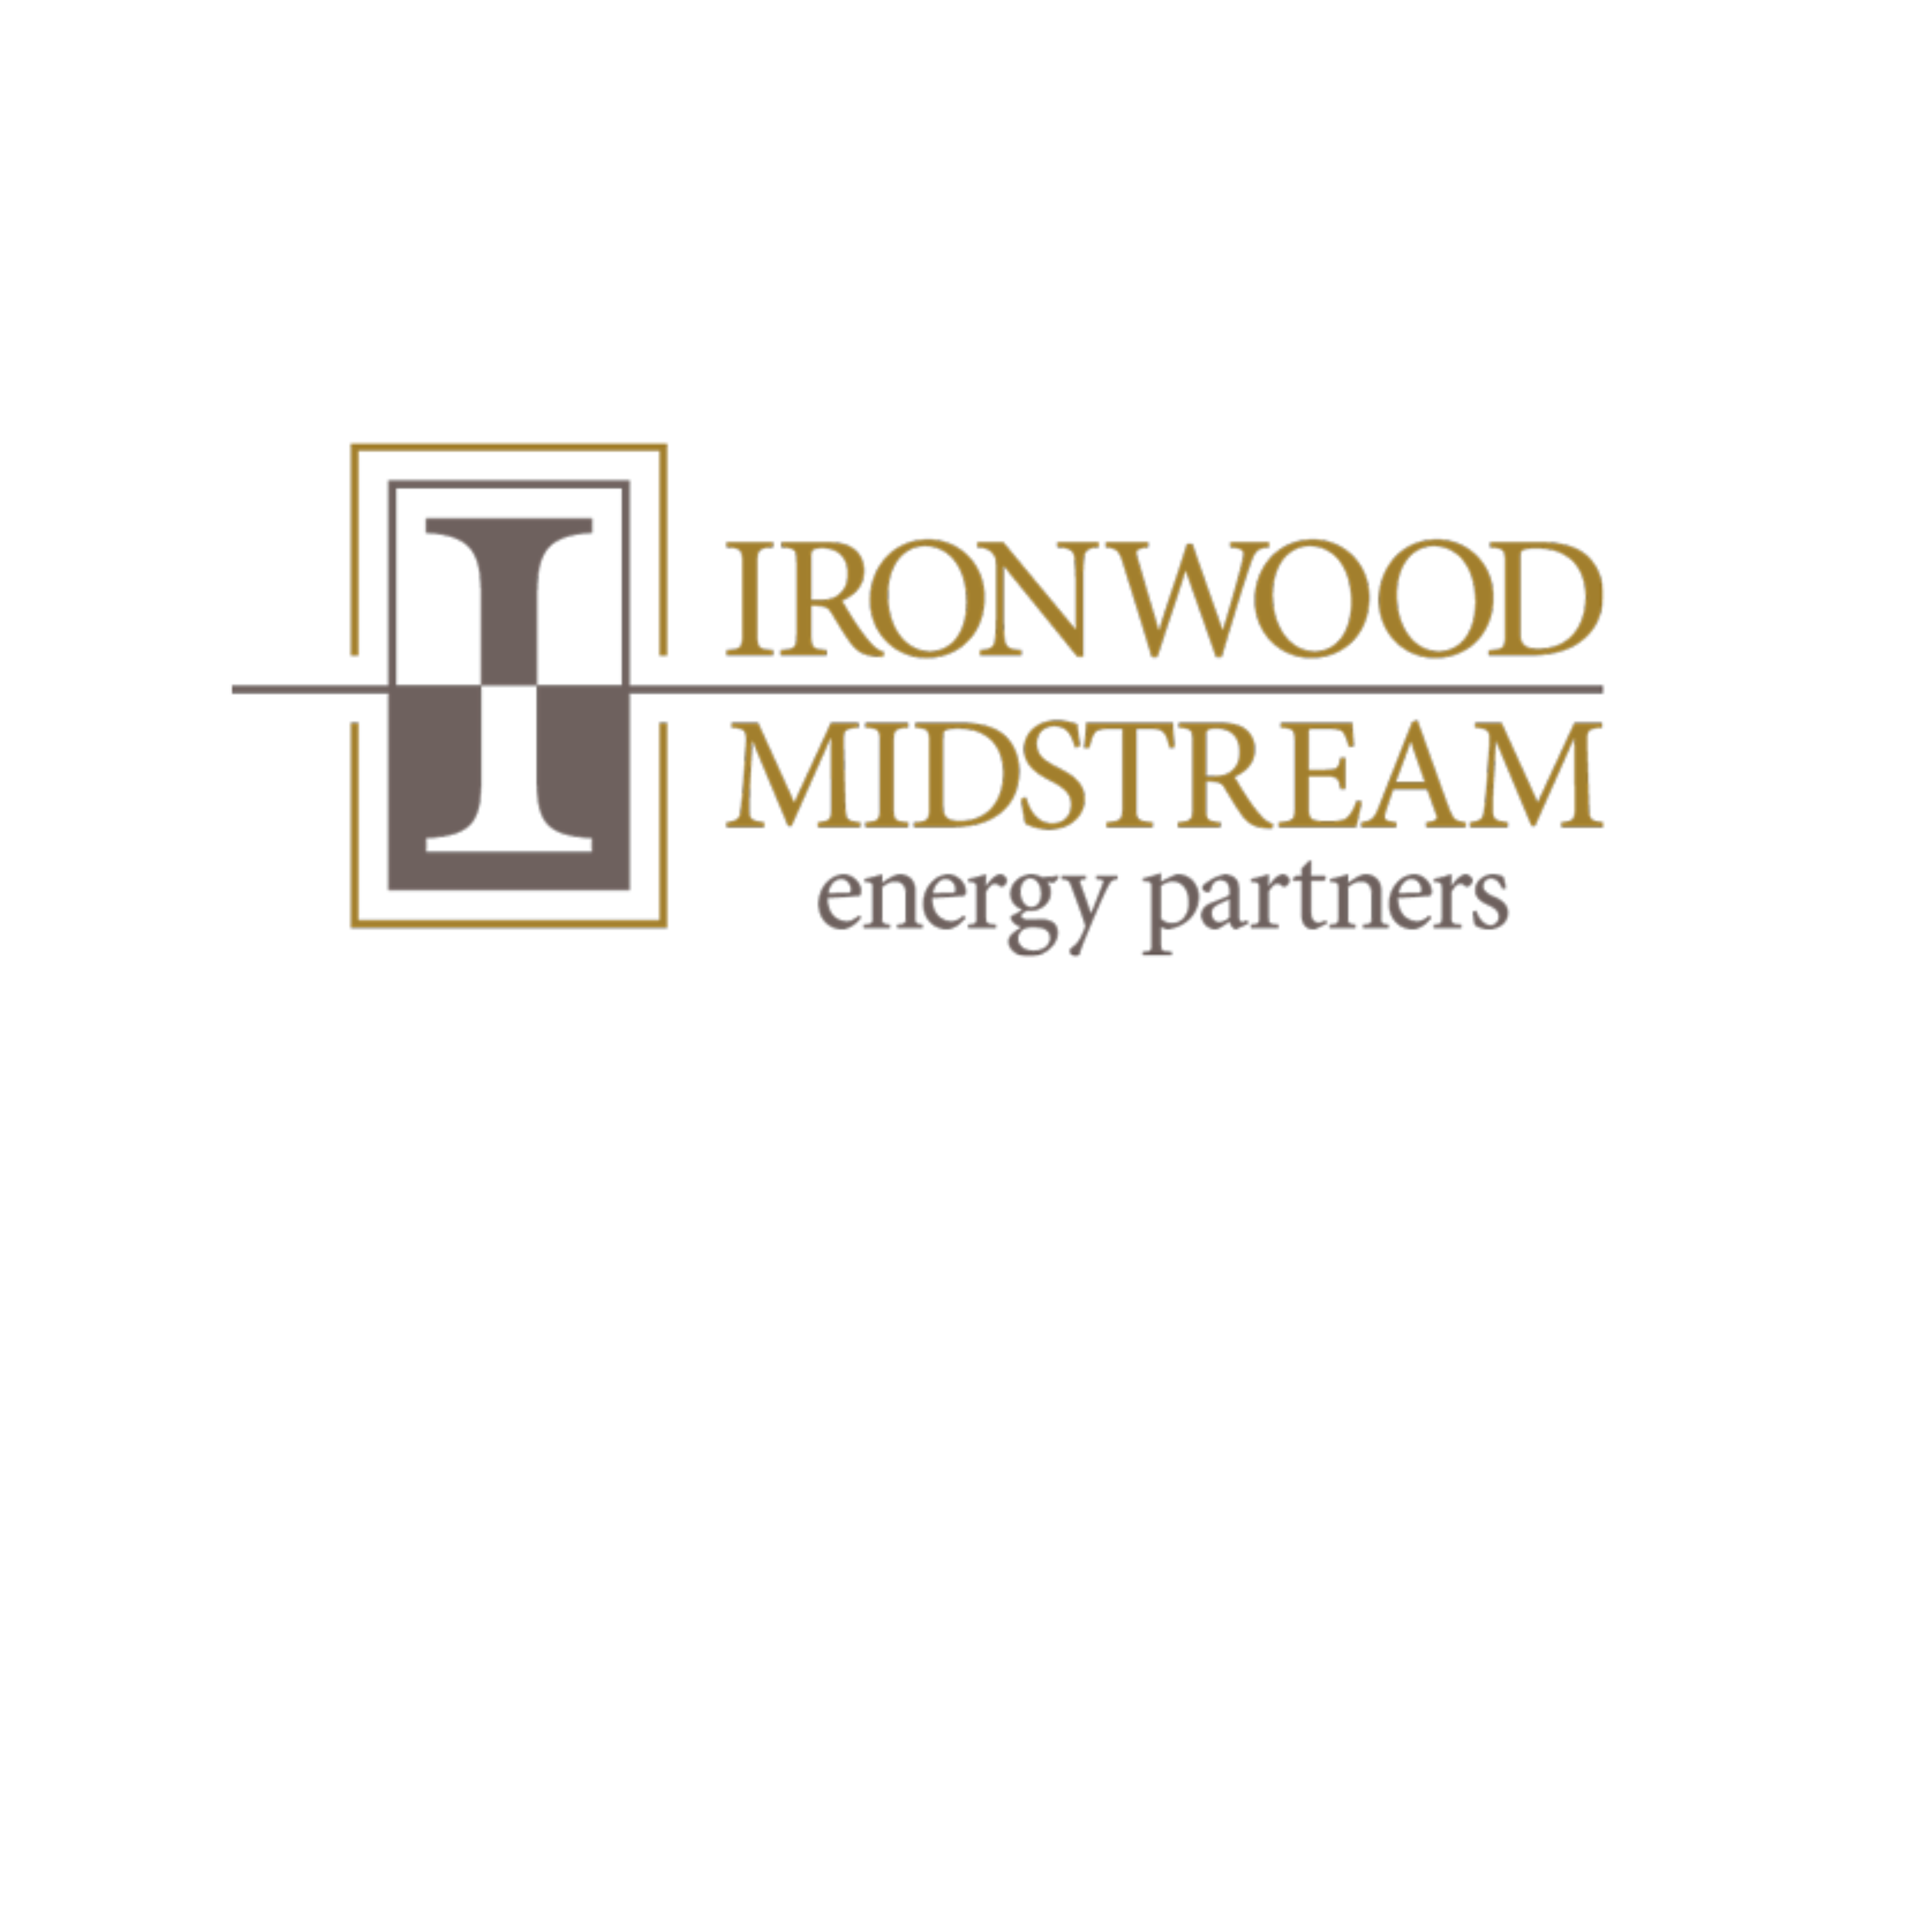 Ironwood Midstream